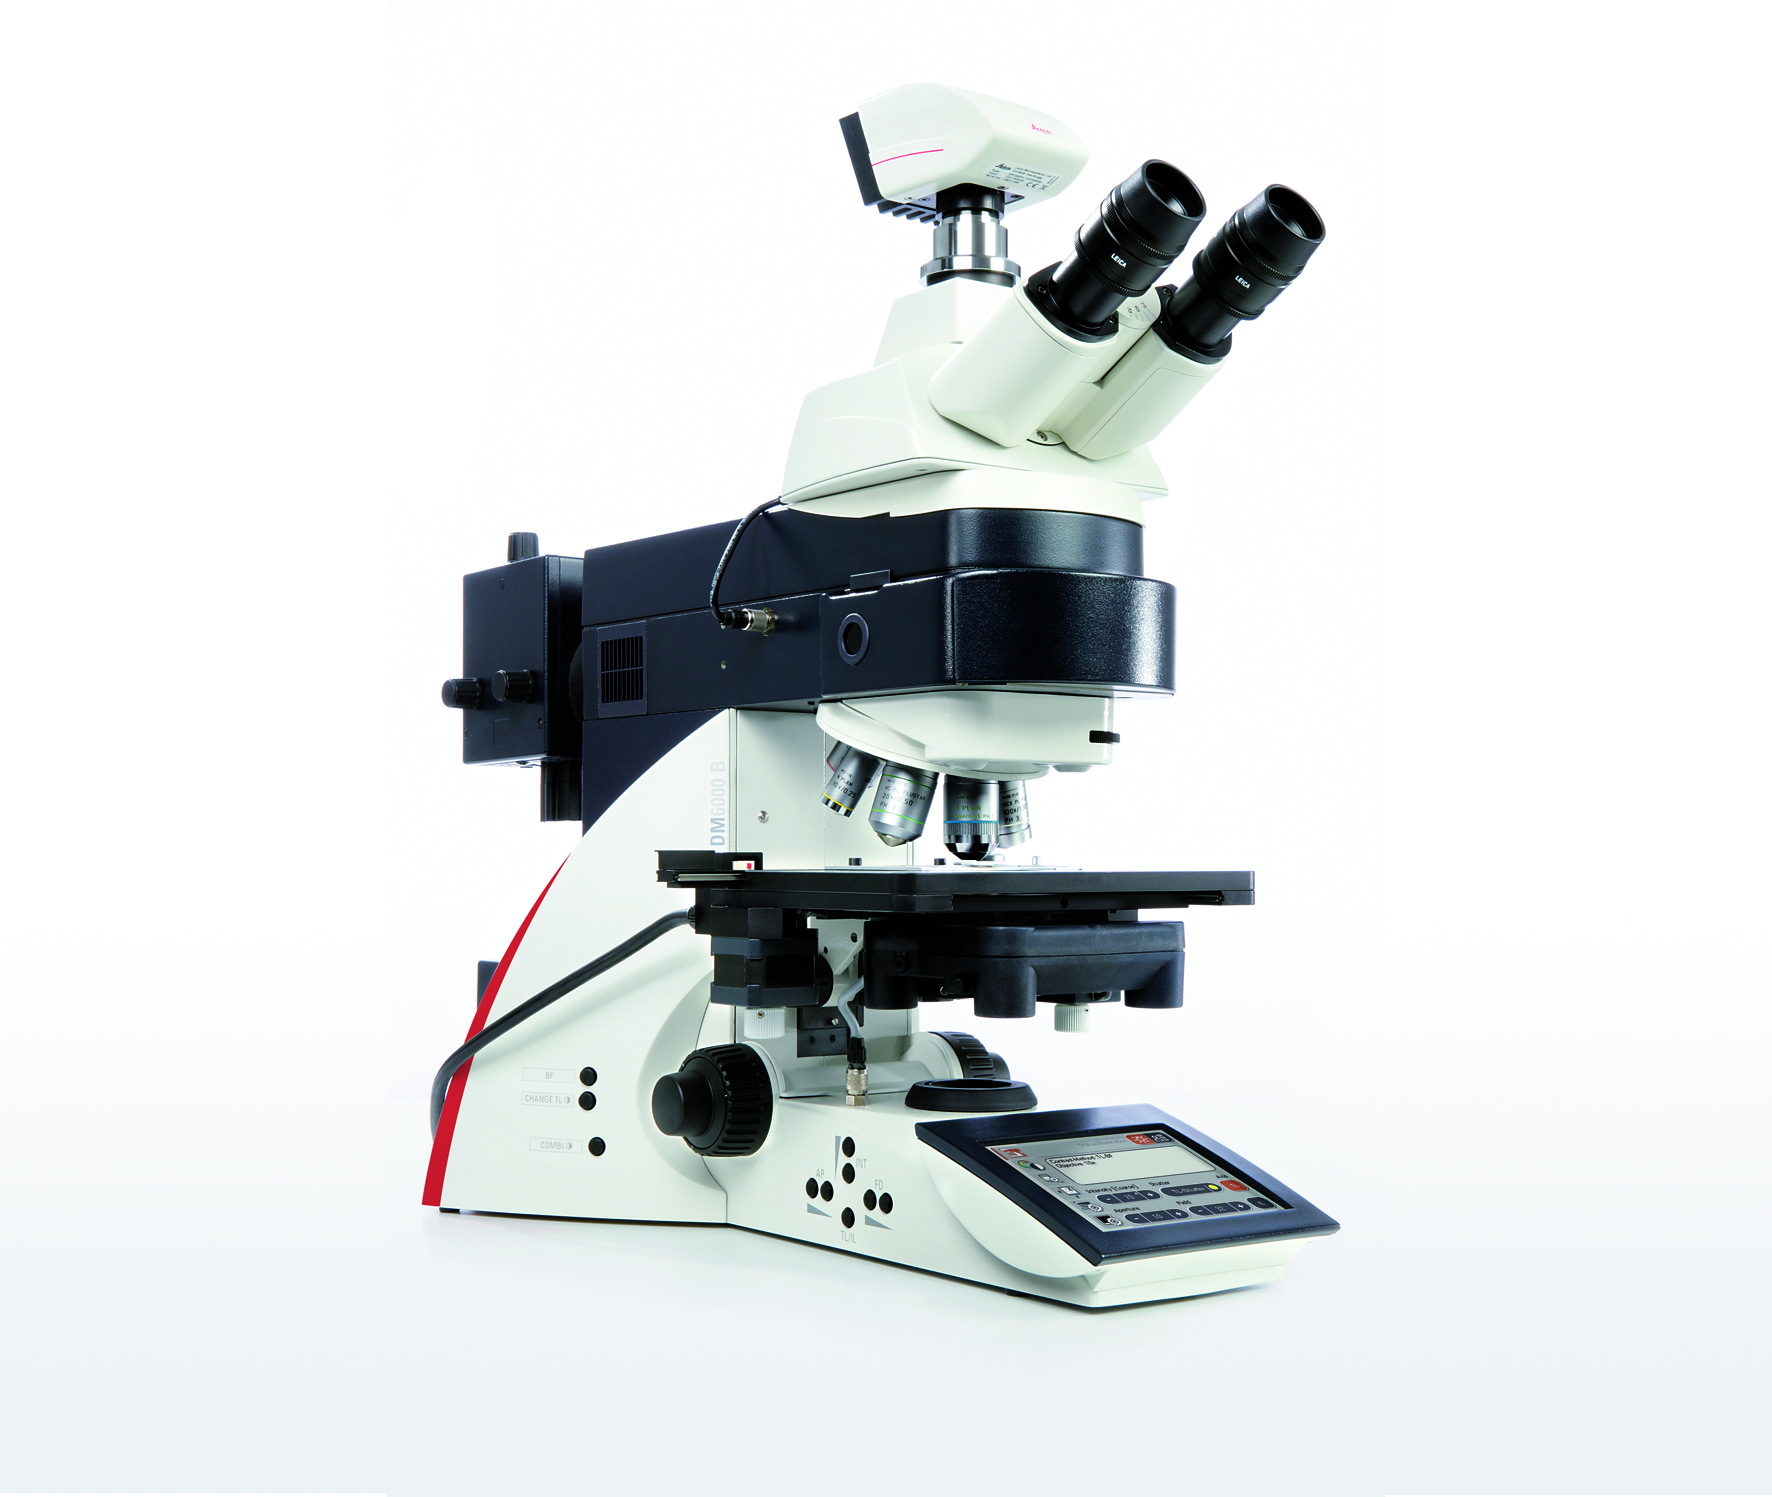 El sistema Leica DM6000 B es una herramienta potente para aplicaciones como la inmunofluorescencia con opción de deconvolución, FISH y obtención de imágenes de células vivas.